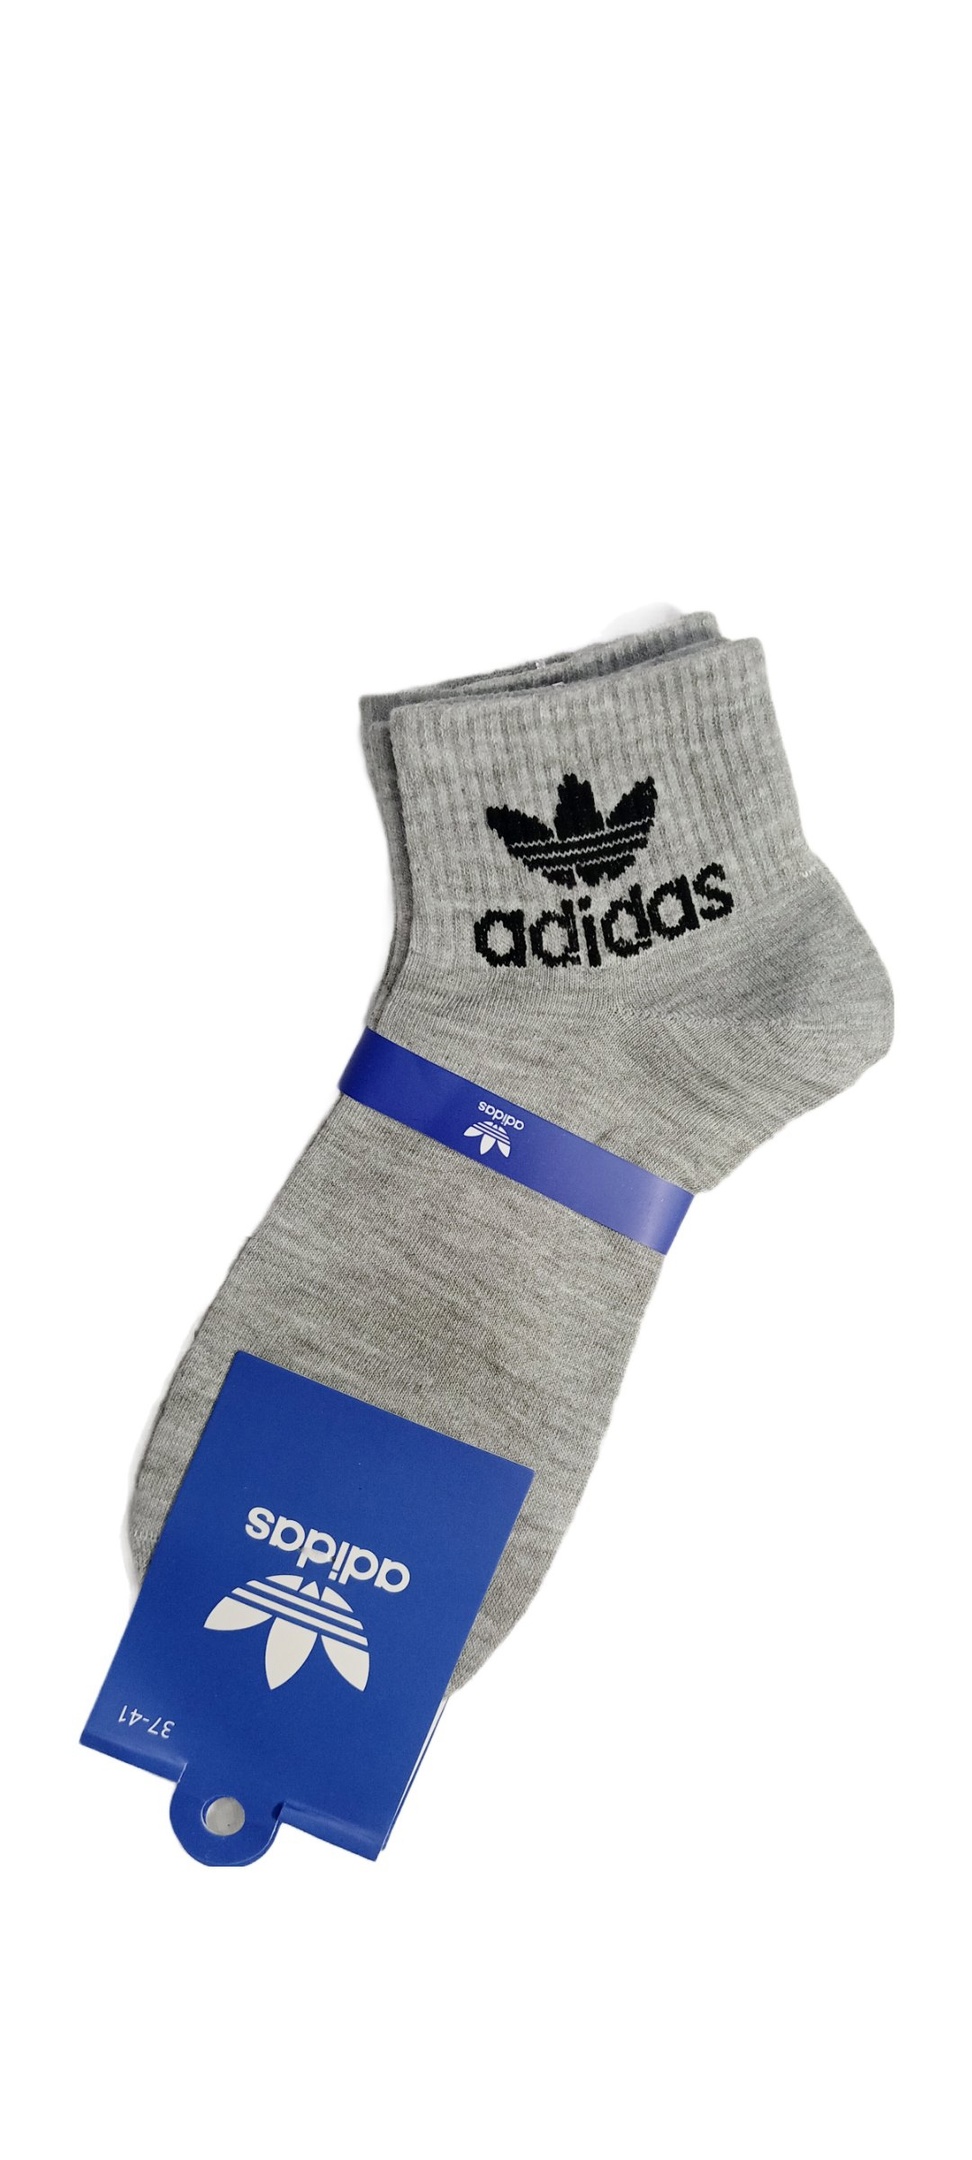 Комплект носков женских Adidas Originals gnk серых 37-41, 2 пары